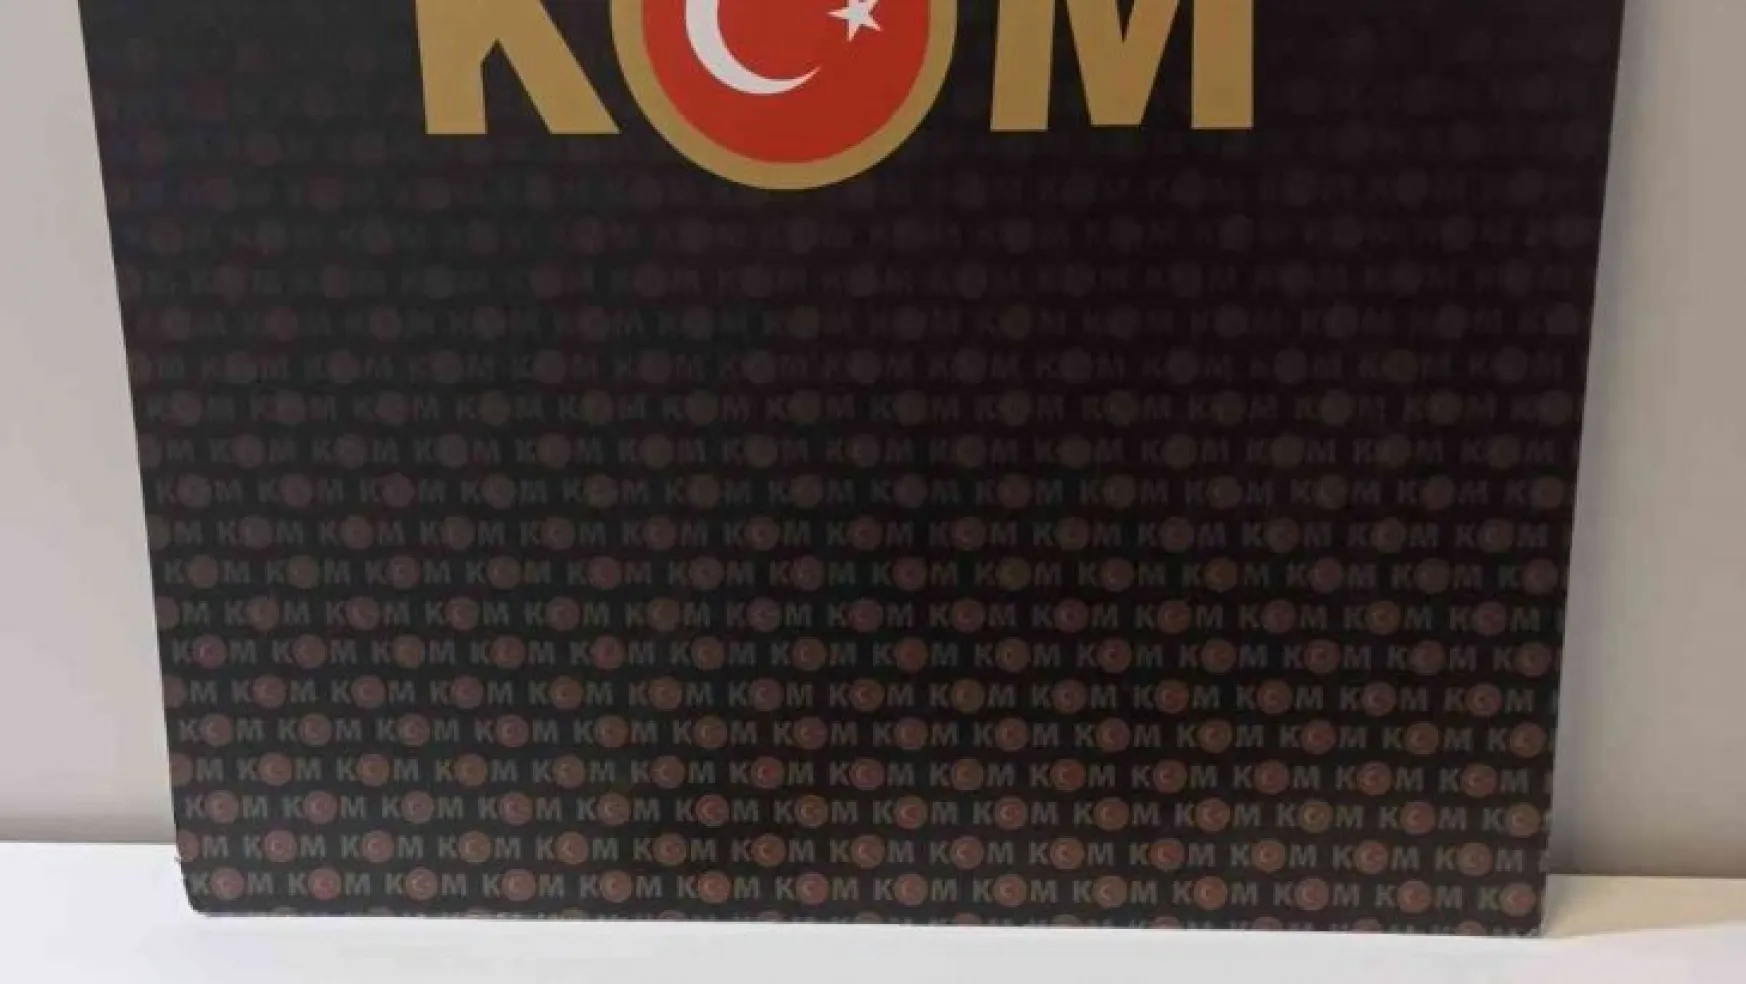 Kayseri'de piyasa değeri 3 milyon TL olan 5 asırlık 2 adet Kur'an-ı Kerim ele geçirildi